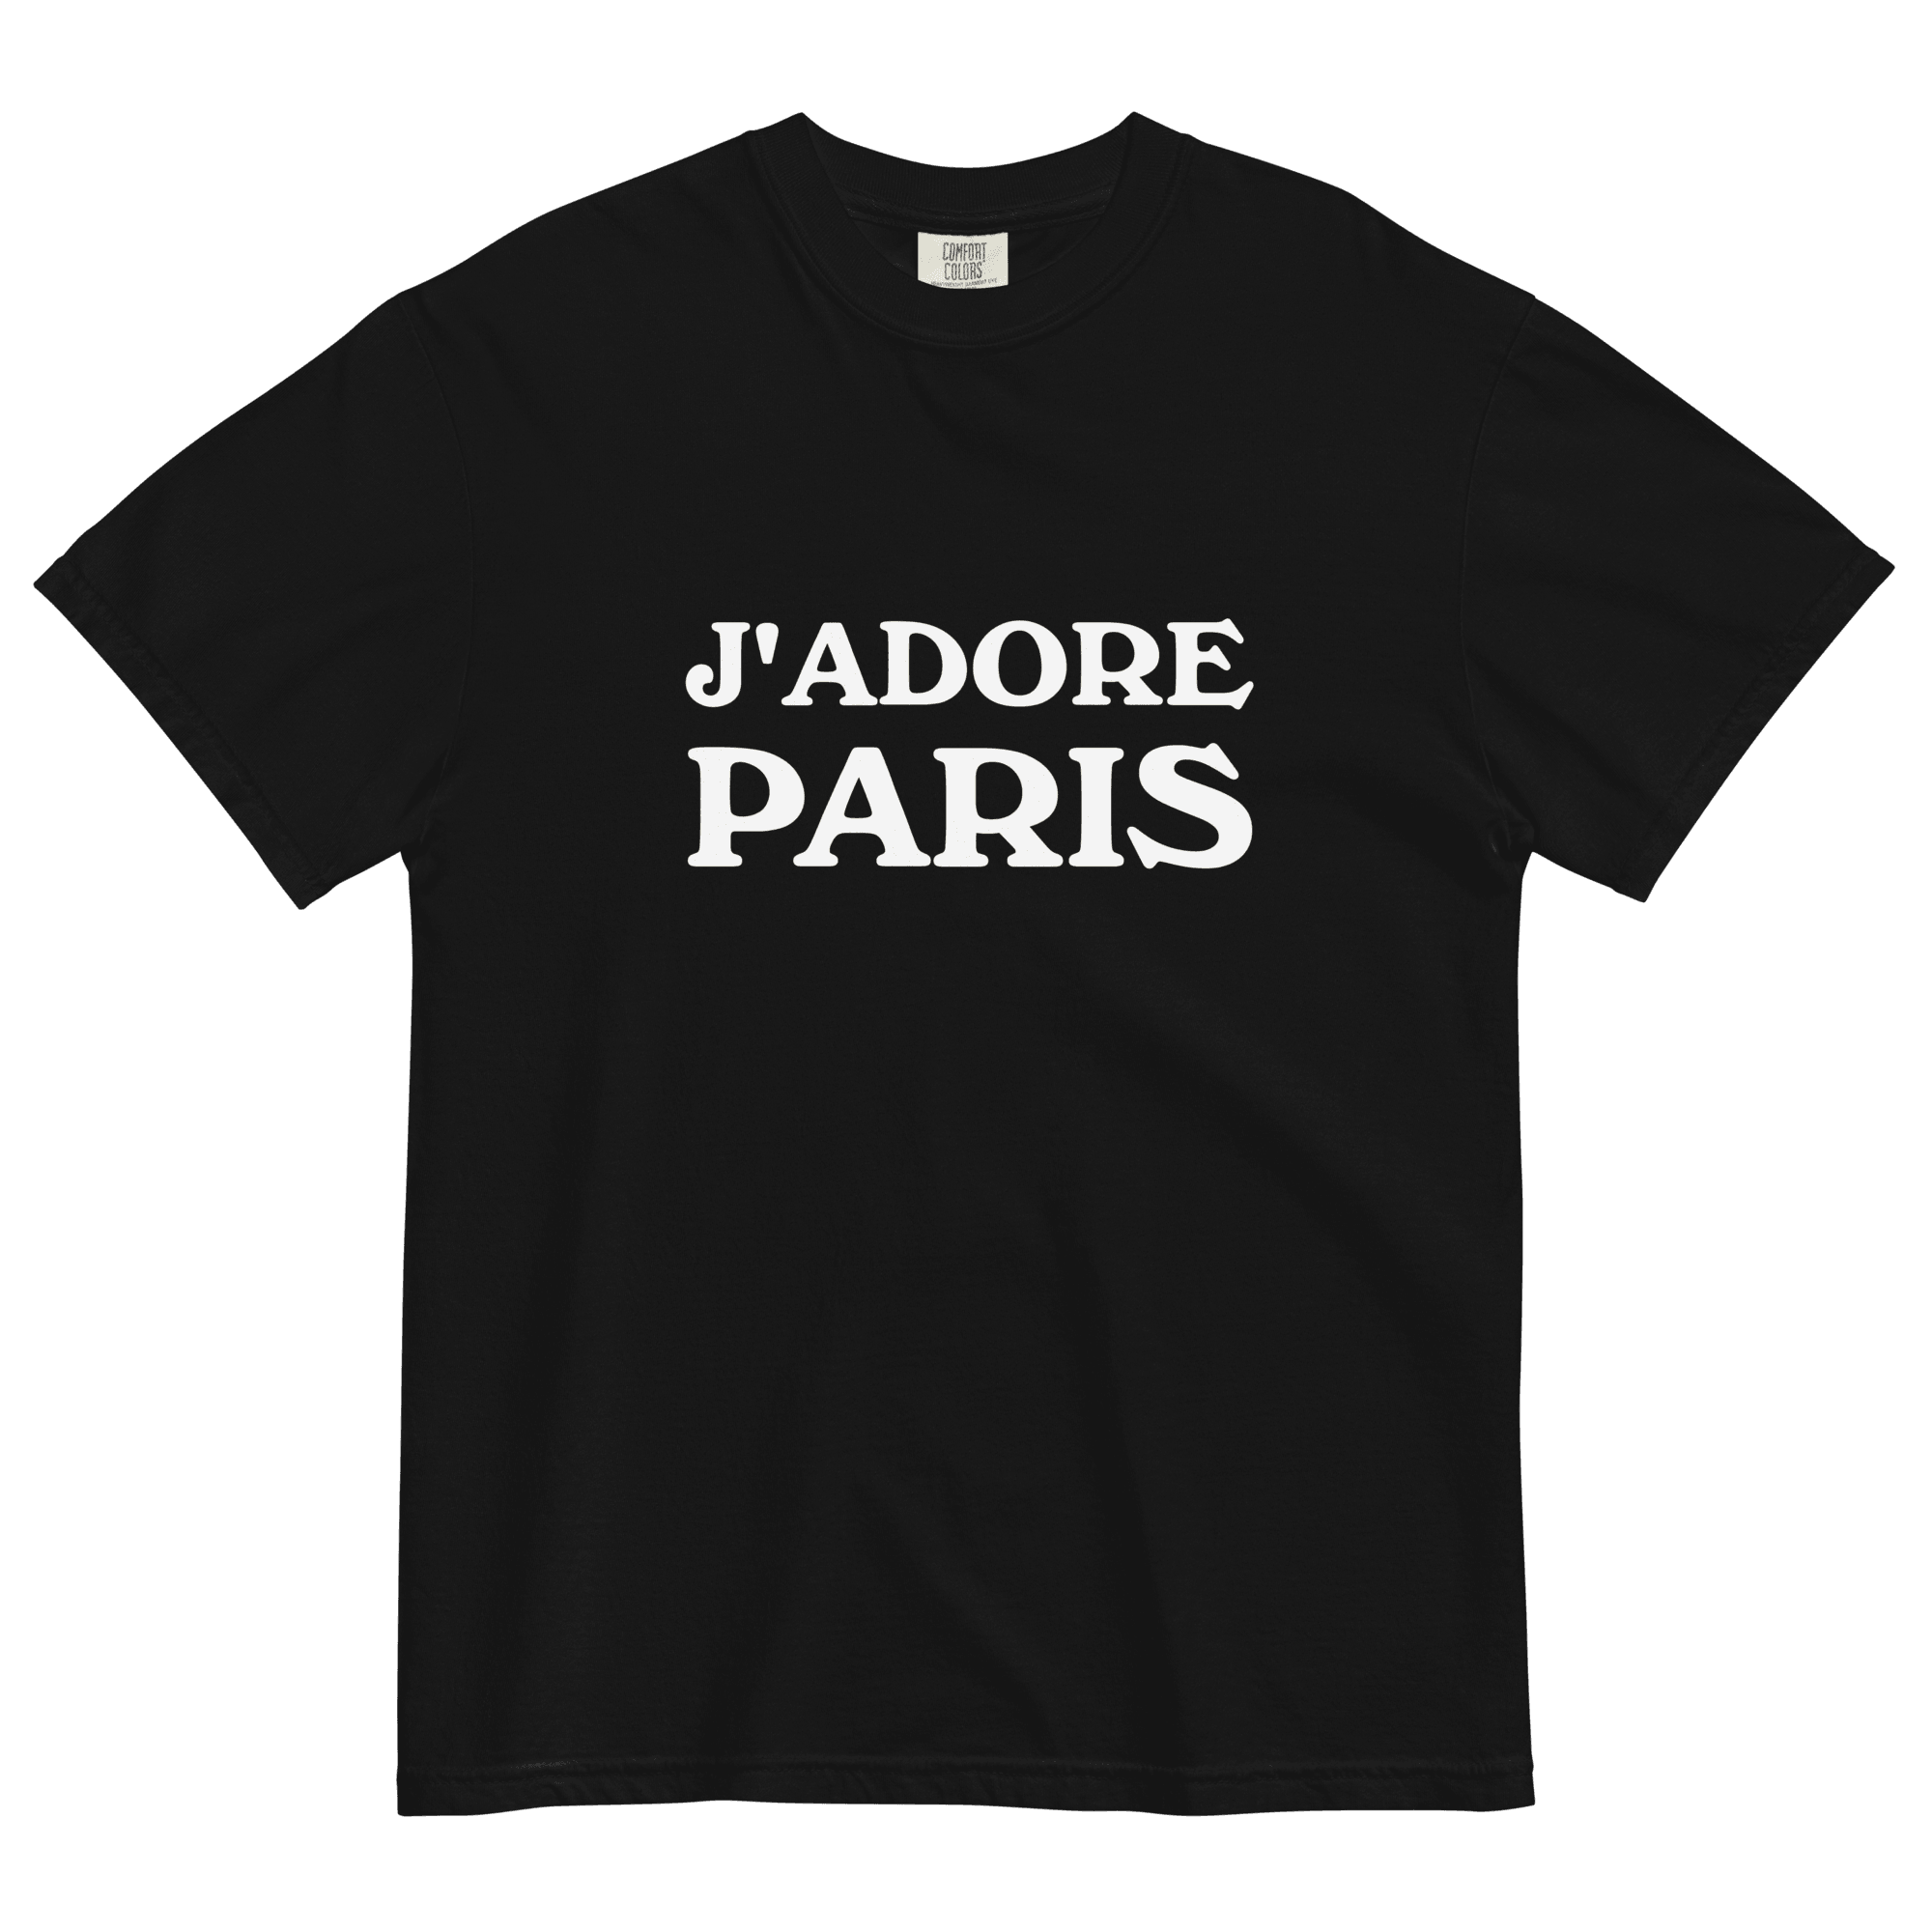 J'ADORE PARIS Shirt - Polychrome Goods 🍊